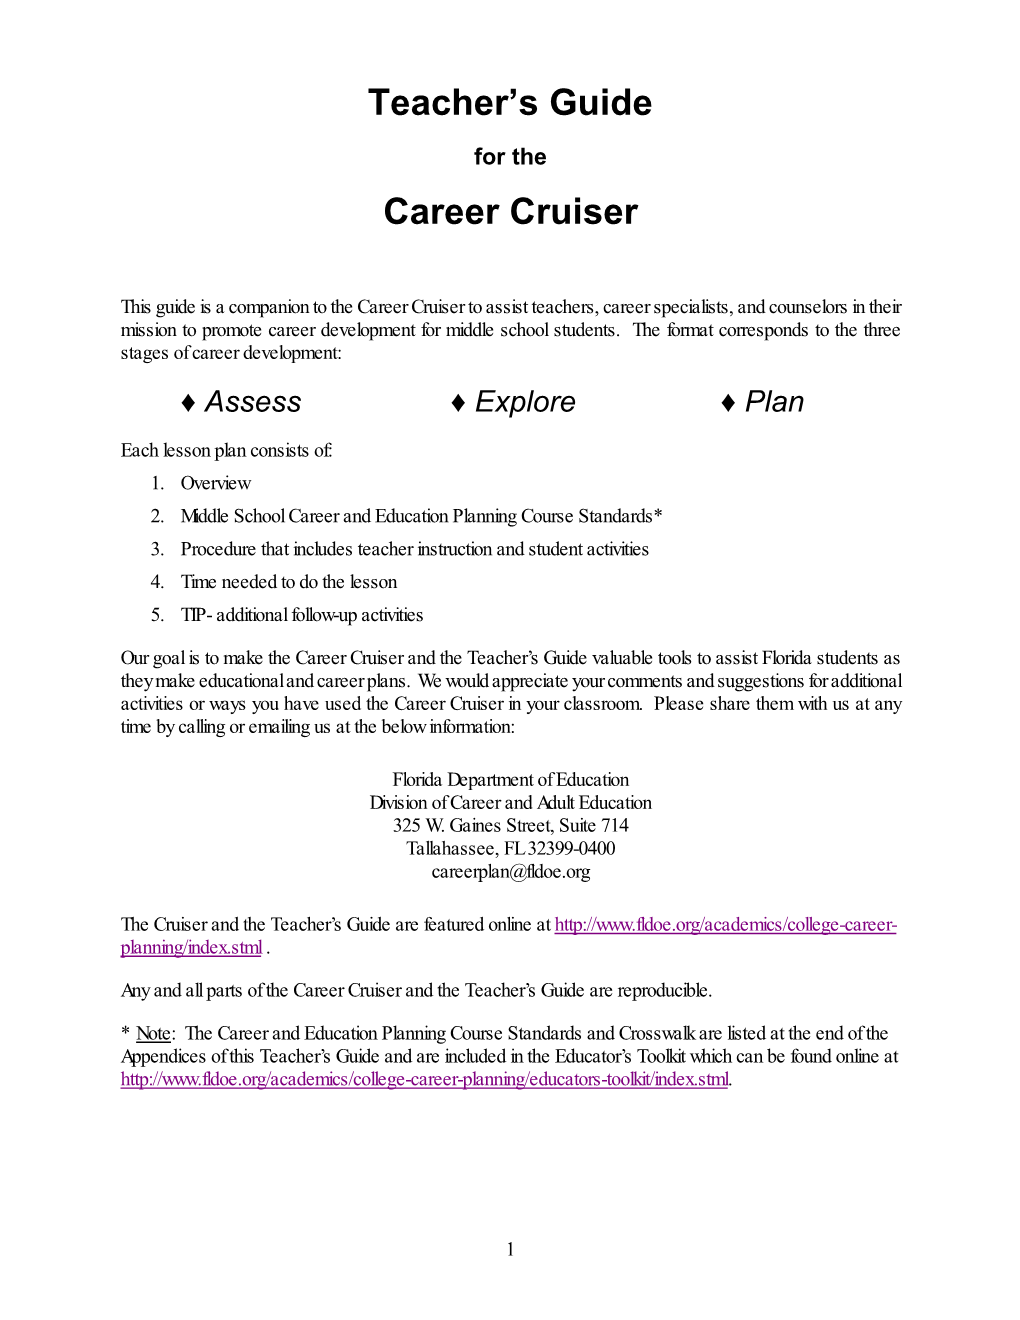 Teacher's Guide for Career Cruiser